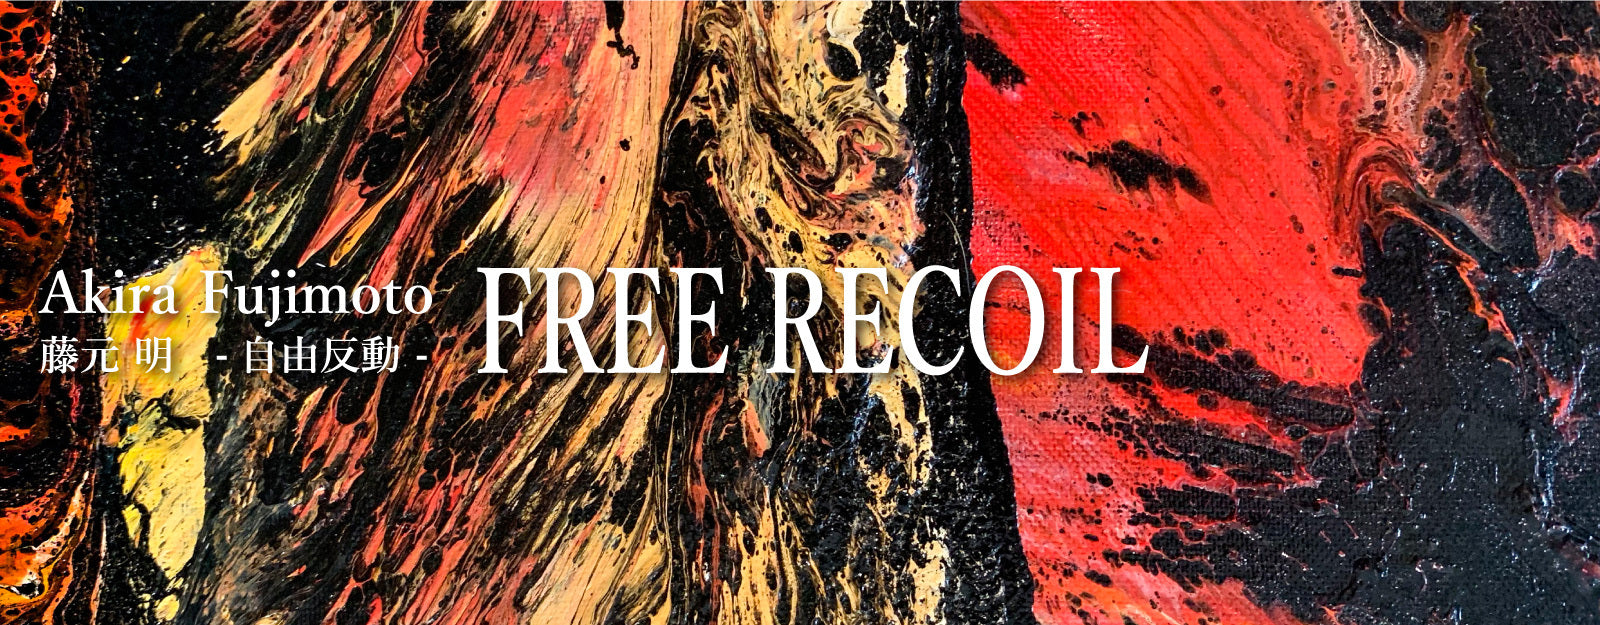 藤元明 個展「FREE RECOIL-自由反動-」